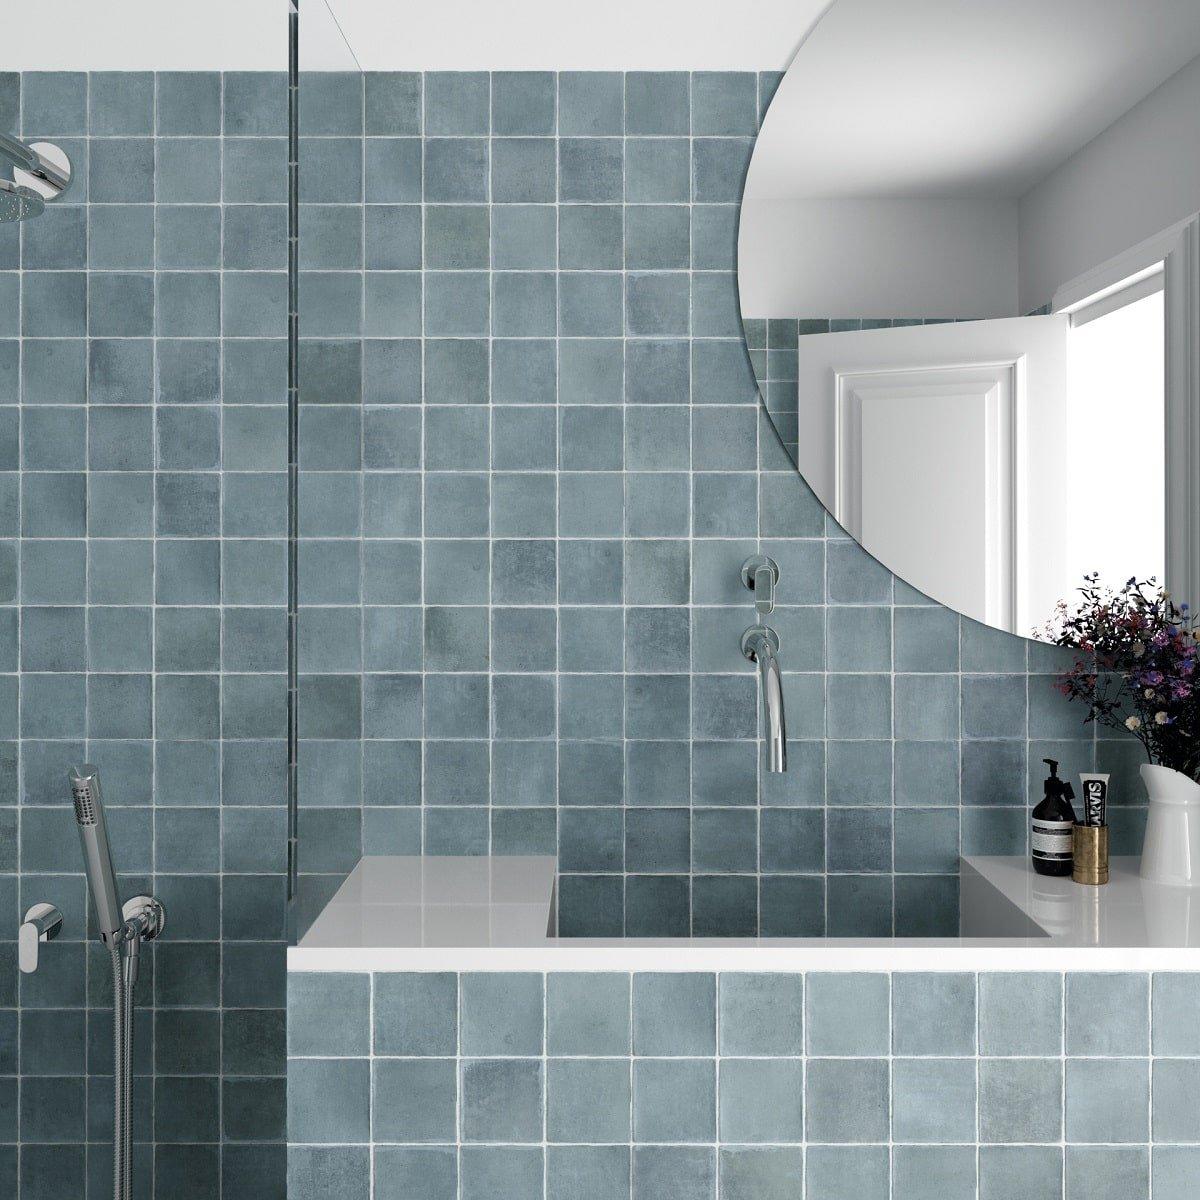 Zellige carrelage bleu dégradé 10x10 cm dans une salle de bain blanche avec douche et accessoires en chrome